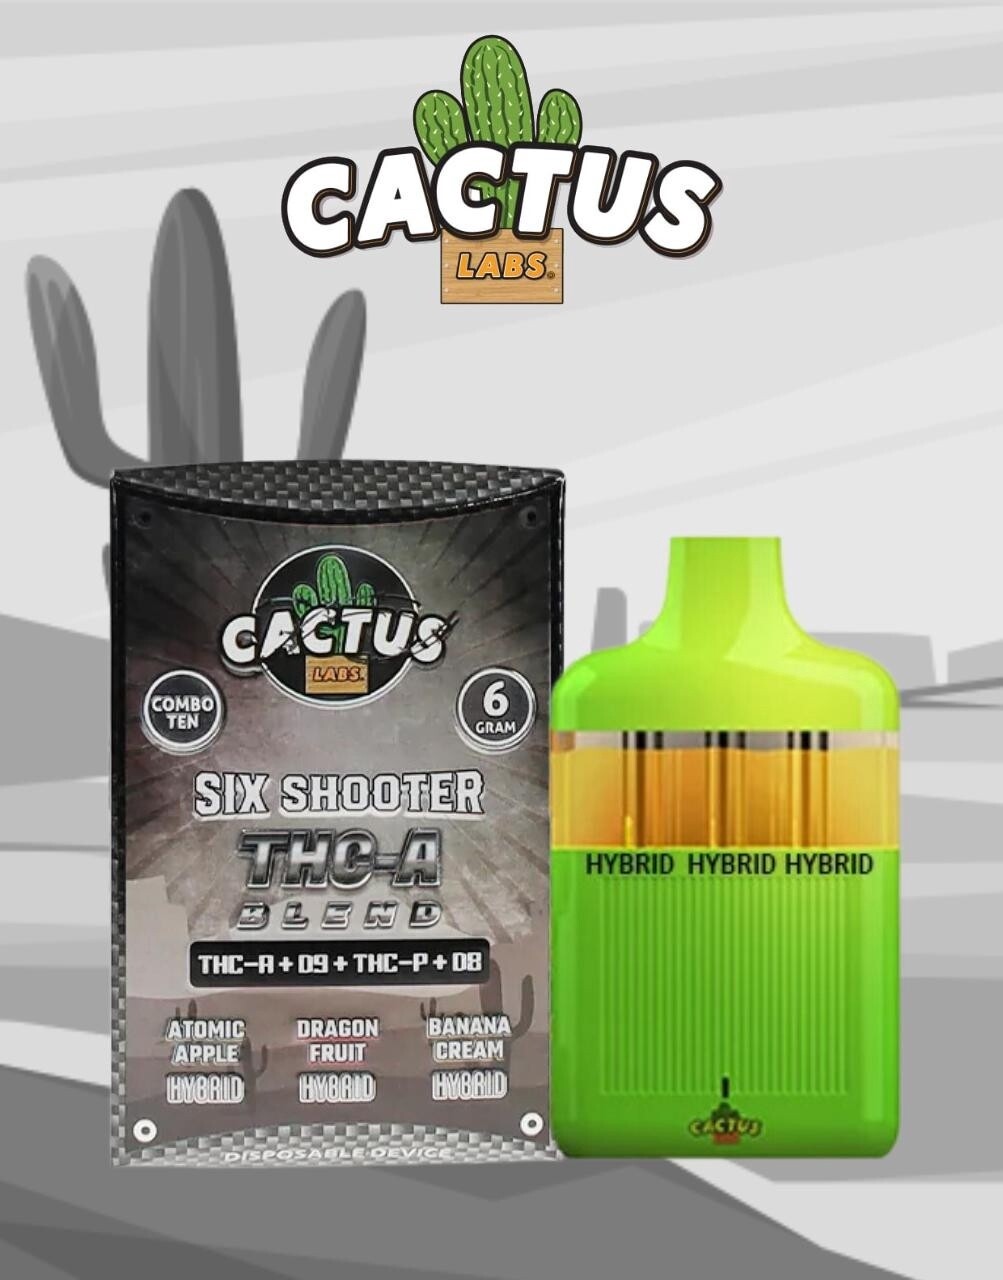 Cactus, 6 Gram Vape, Hybrid, 3-in-1 (Combo 10)